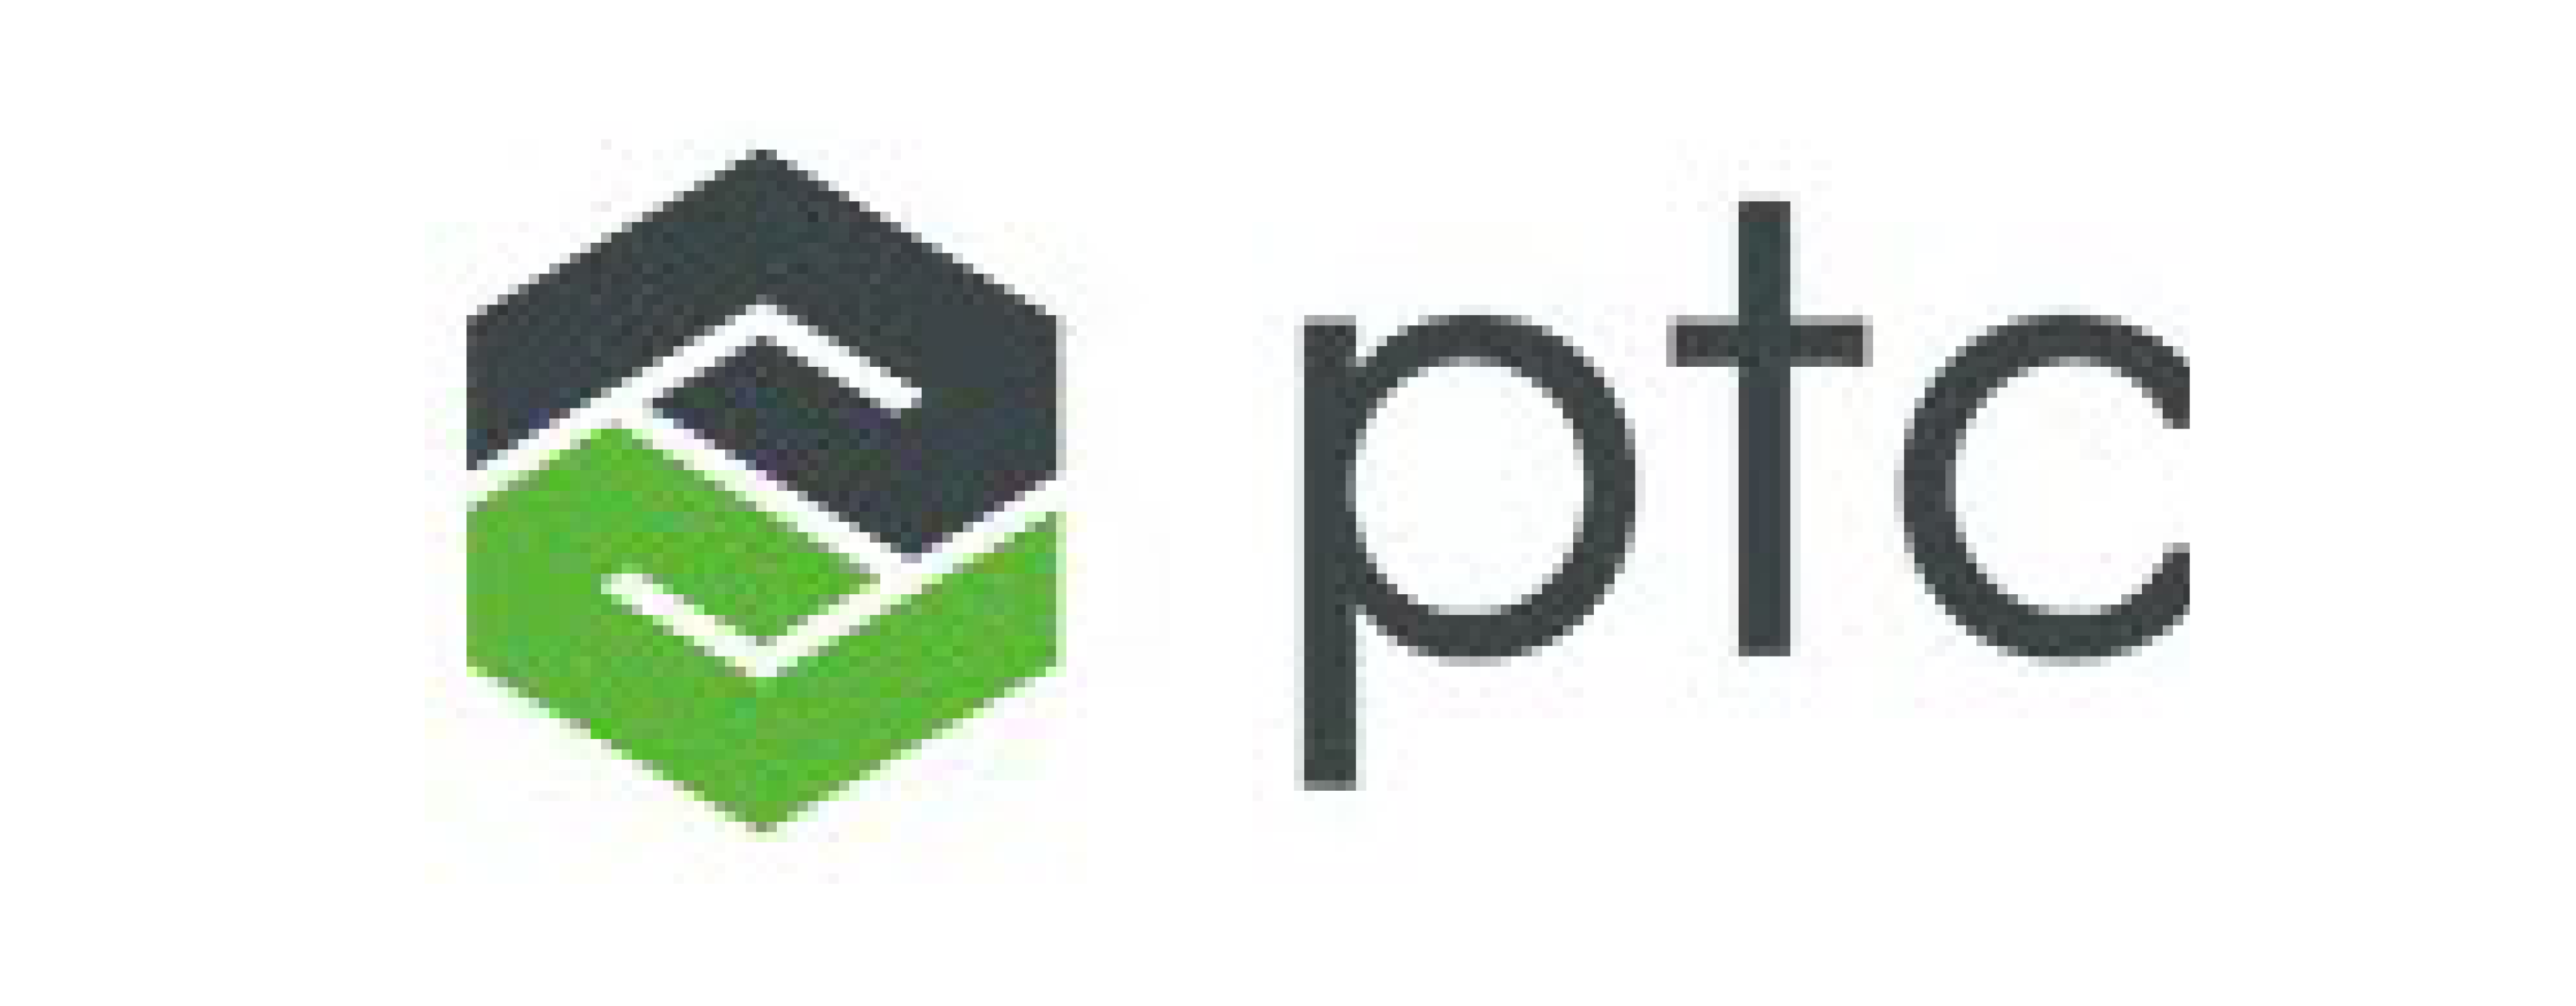 Logotipo de PTC